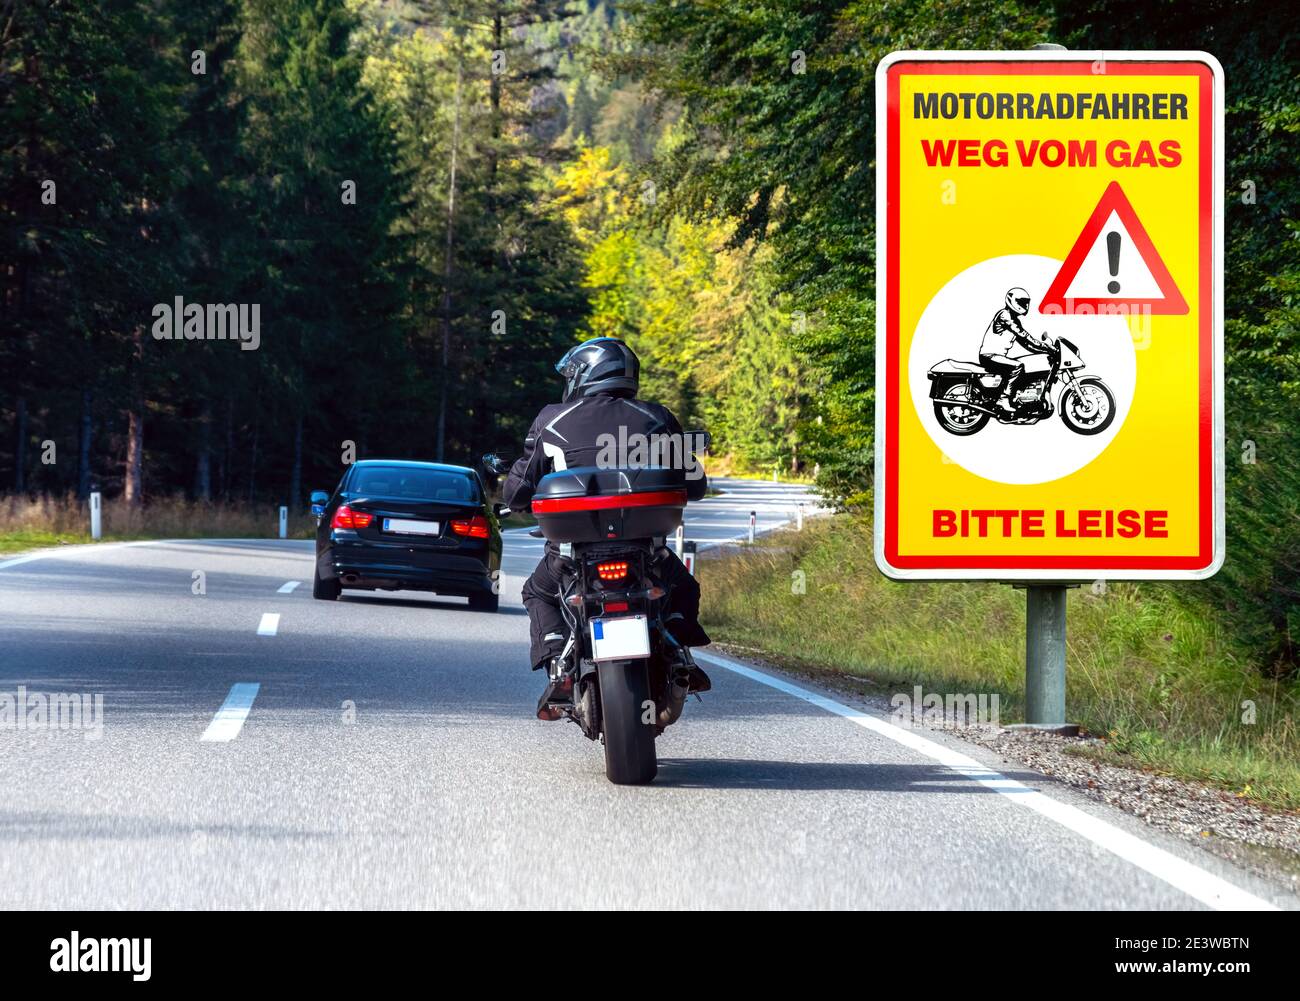 Scena di guida sulla strada con motociclista e segnaletica stradale 'Moto radfahrer weg vom gas -Bitte leise-' (motociclista fuori dal gas - si prega di fare silenzio) Foto Stock